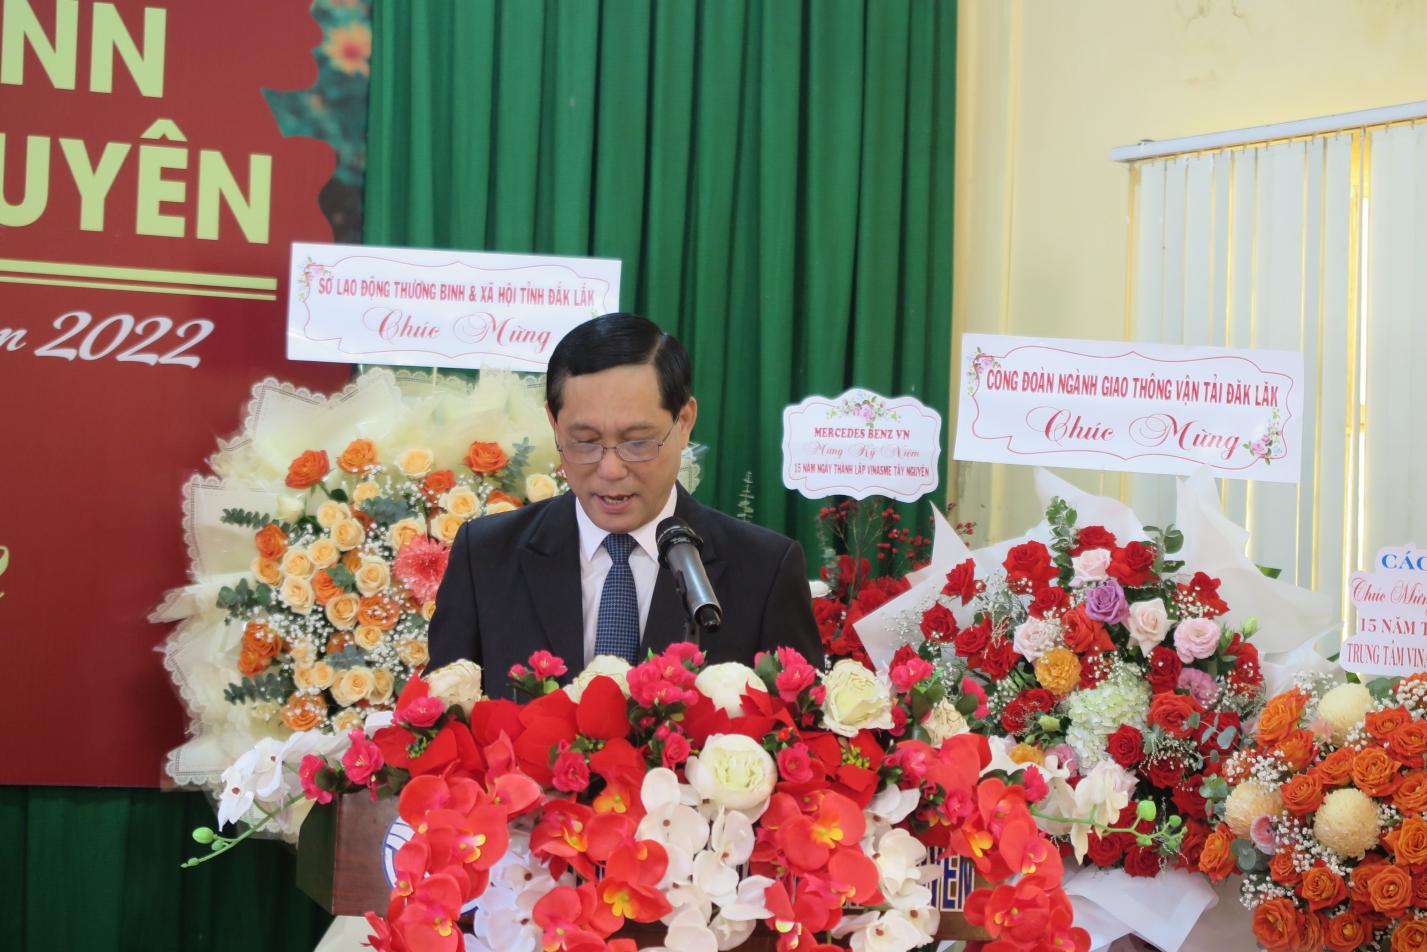 Ông Nguyễn Quang Thuân, phó Giám đốc Sở LĐ-TB&XH tỉnh Đăk Lăk phát biểu tại buổi lễ.